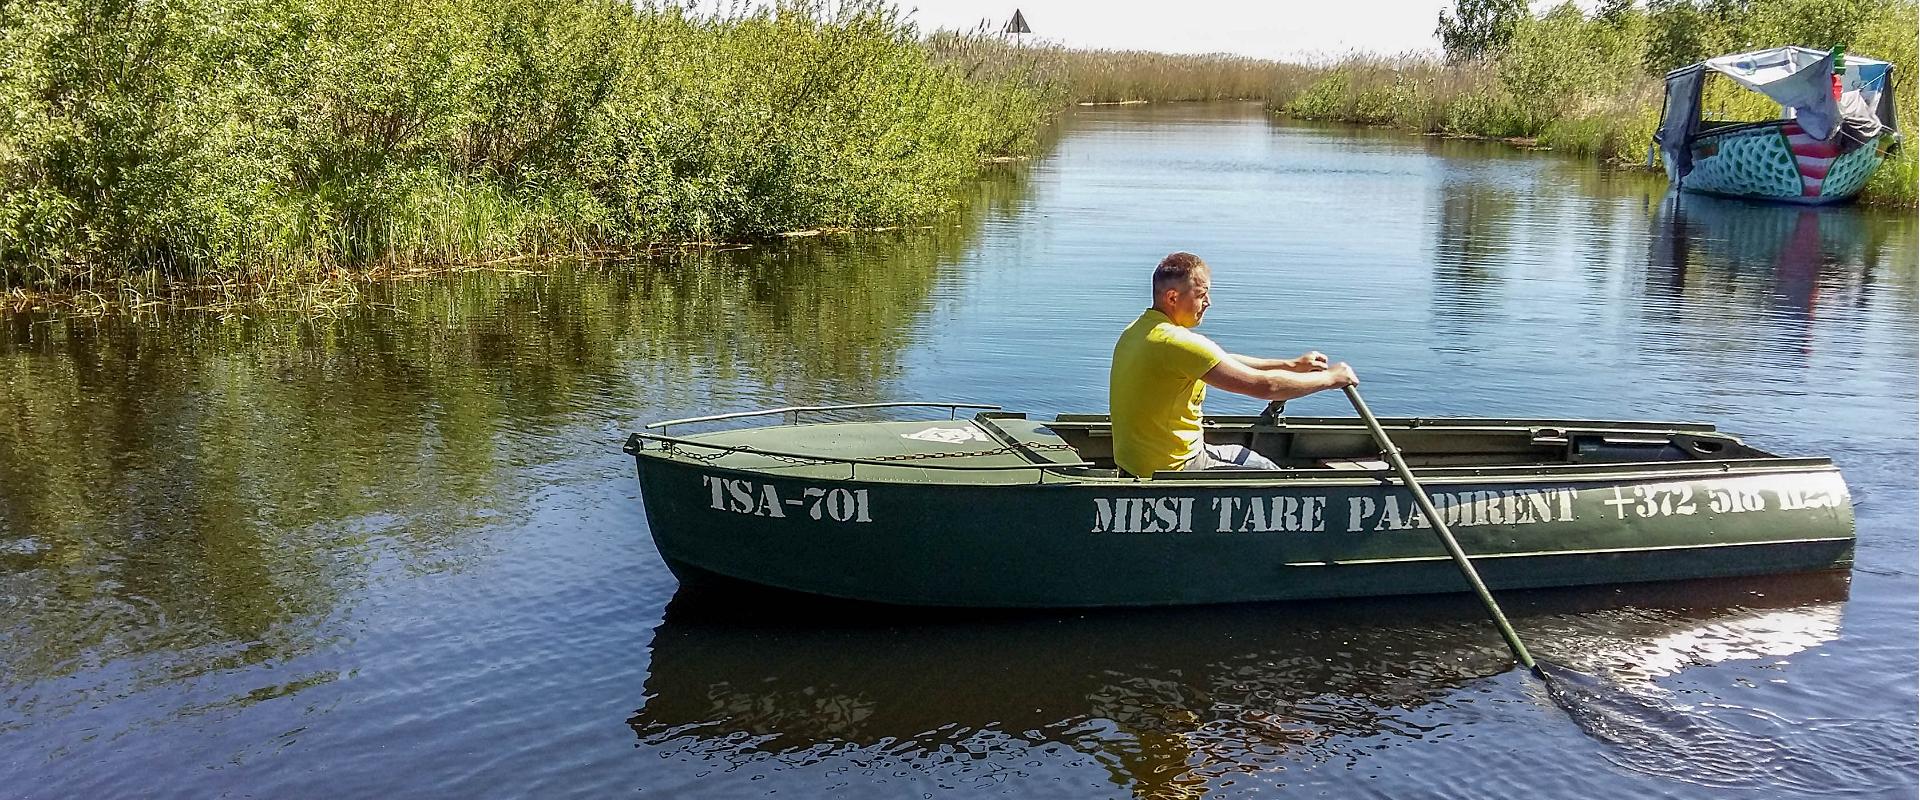 Mesi Tare boat rental in Varnja